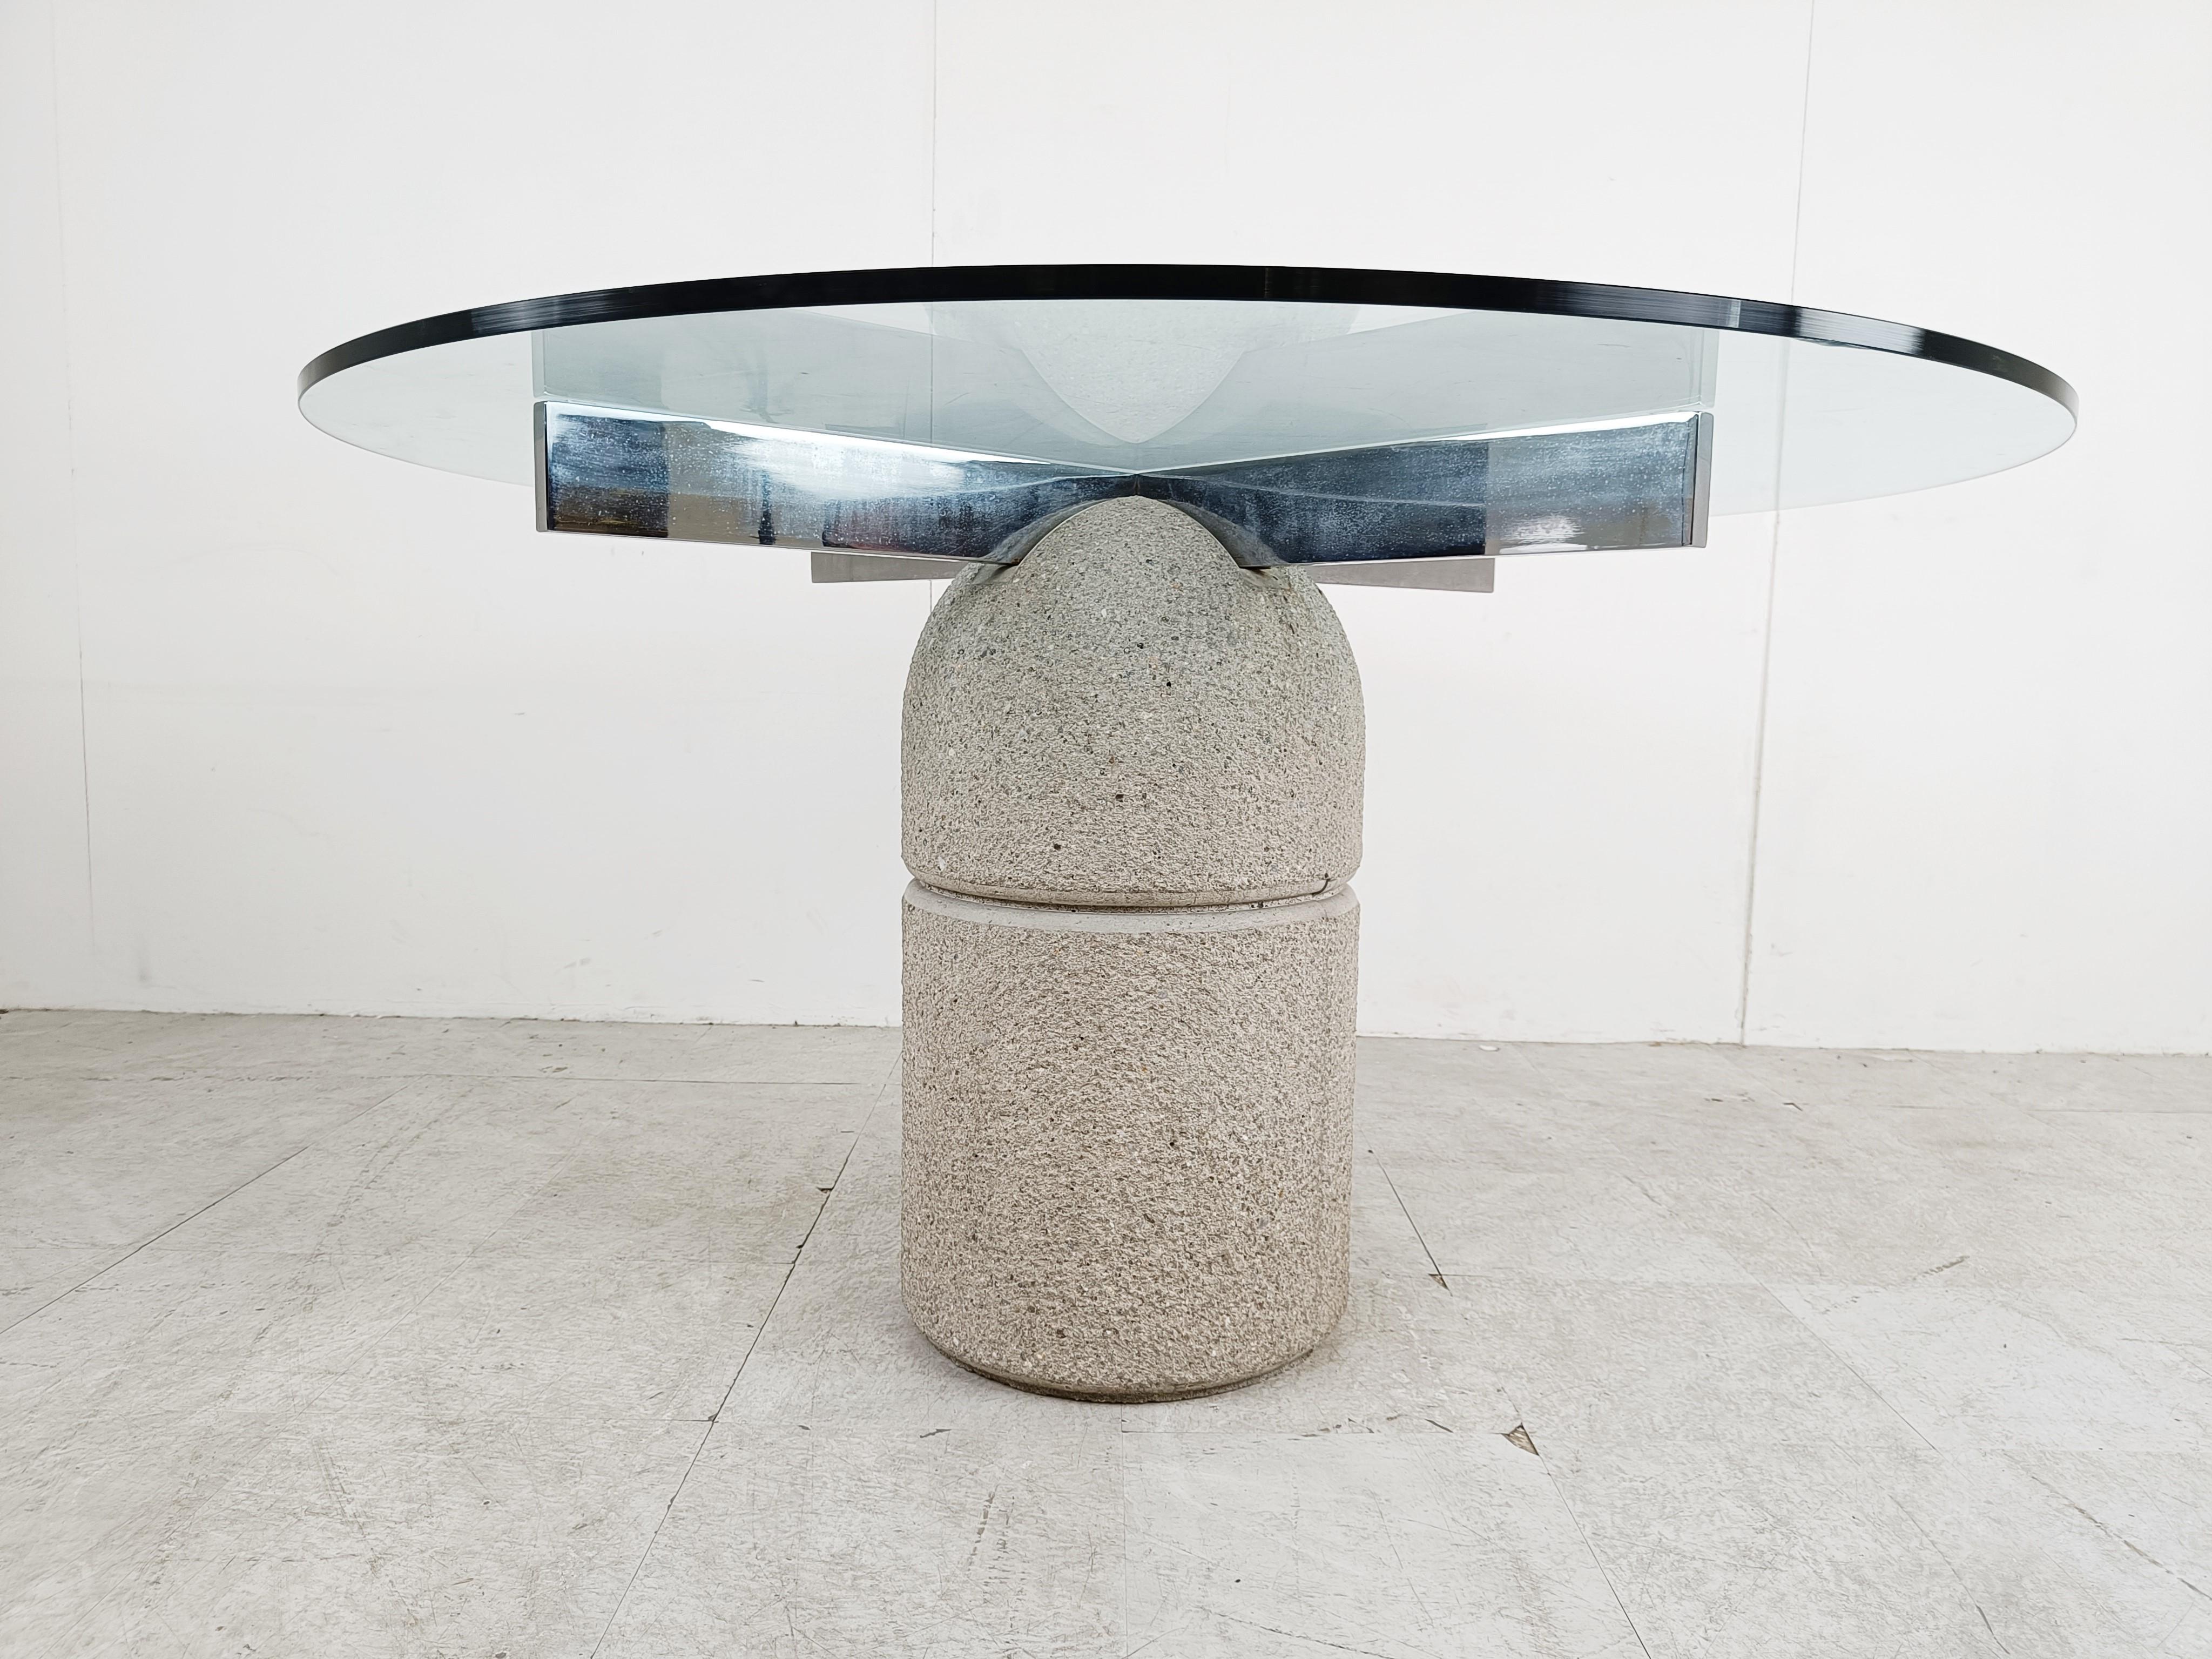 Table centrale ou de salle à manger en béton et chrome conçue par Giovanni Offredi pour Saporiti Italie modèle 'Paracarro'.

Le verre sur les images est un exemple, nous incluons un nouveau verre comme indiqué, mais pour des tailles de verre